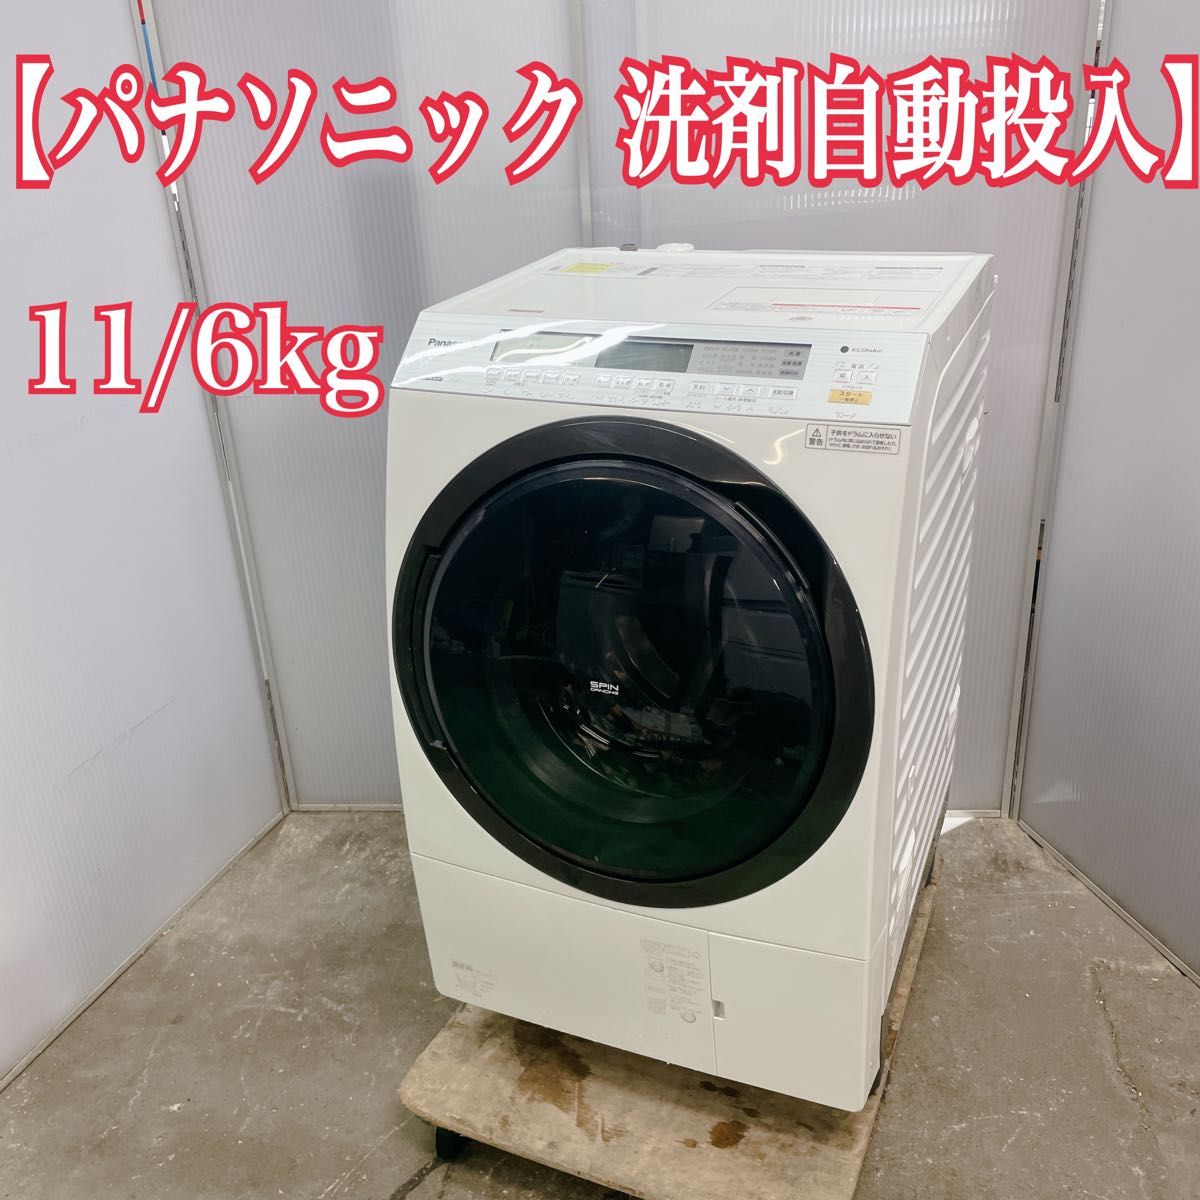 パナソニック 洗剤自動投入 ドラム式洗濯機 洗濯11kg 乾燥6kg 洗濯乾燥